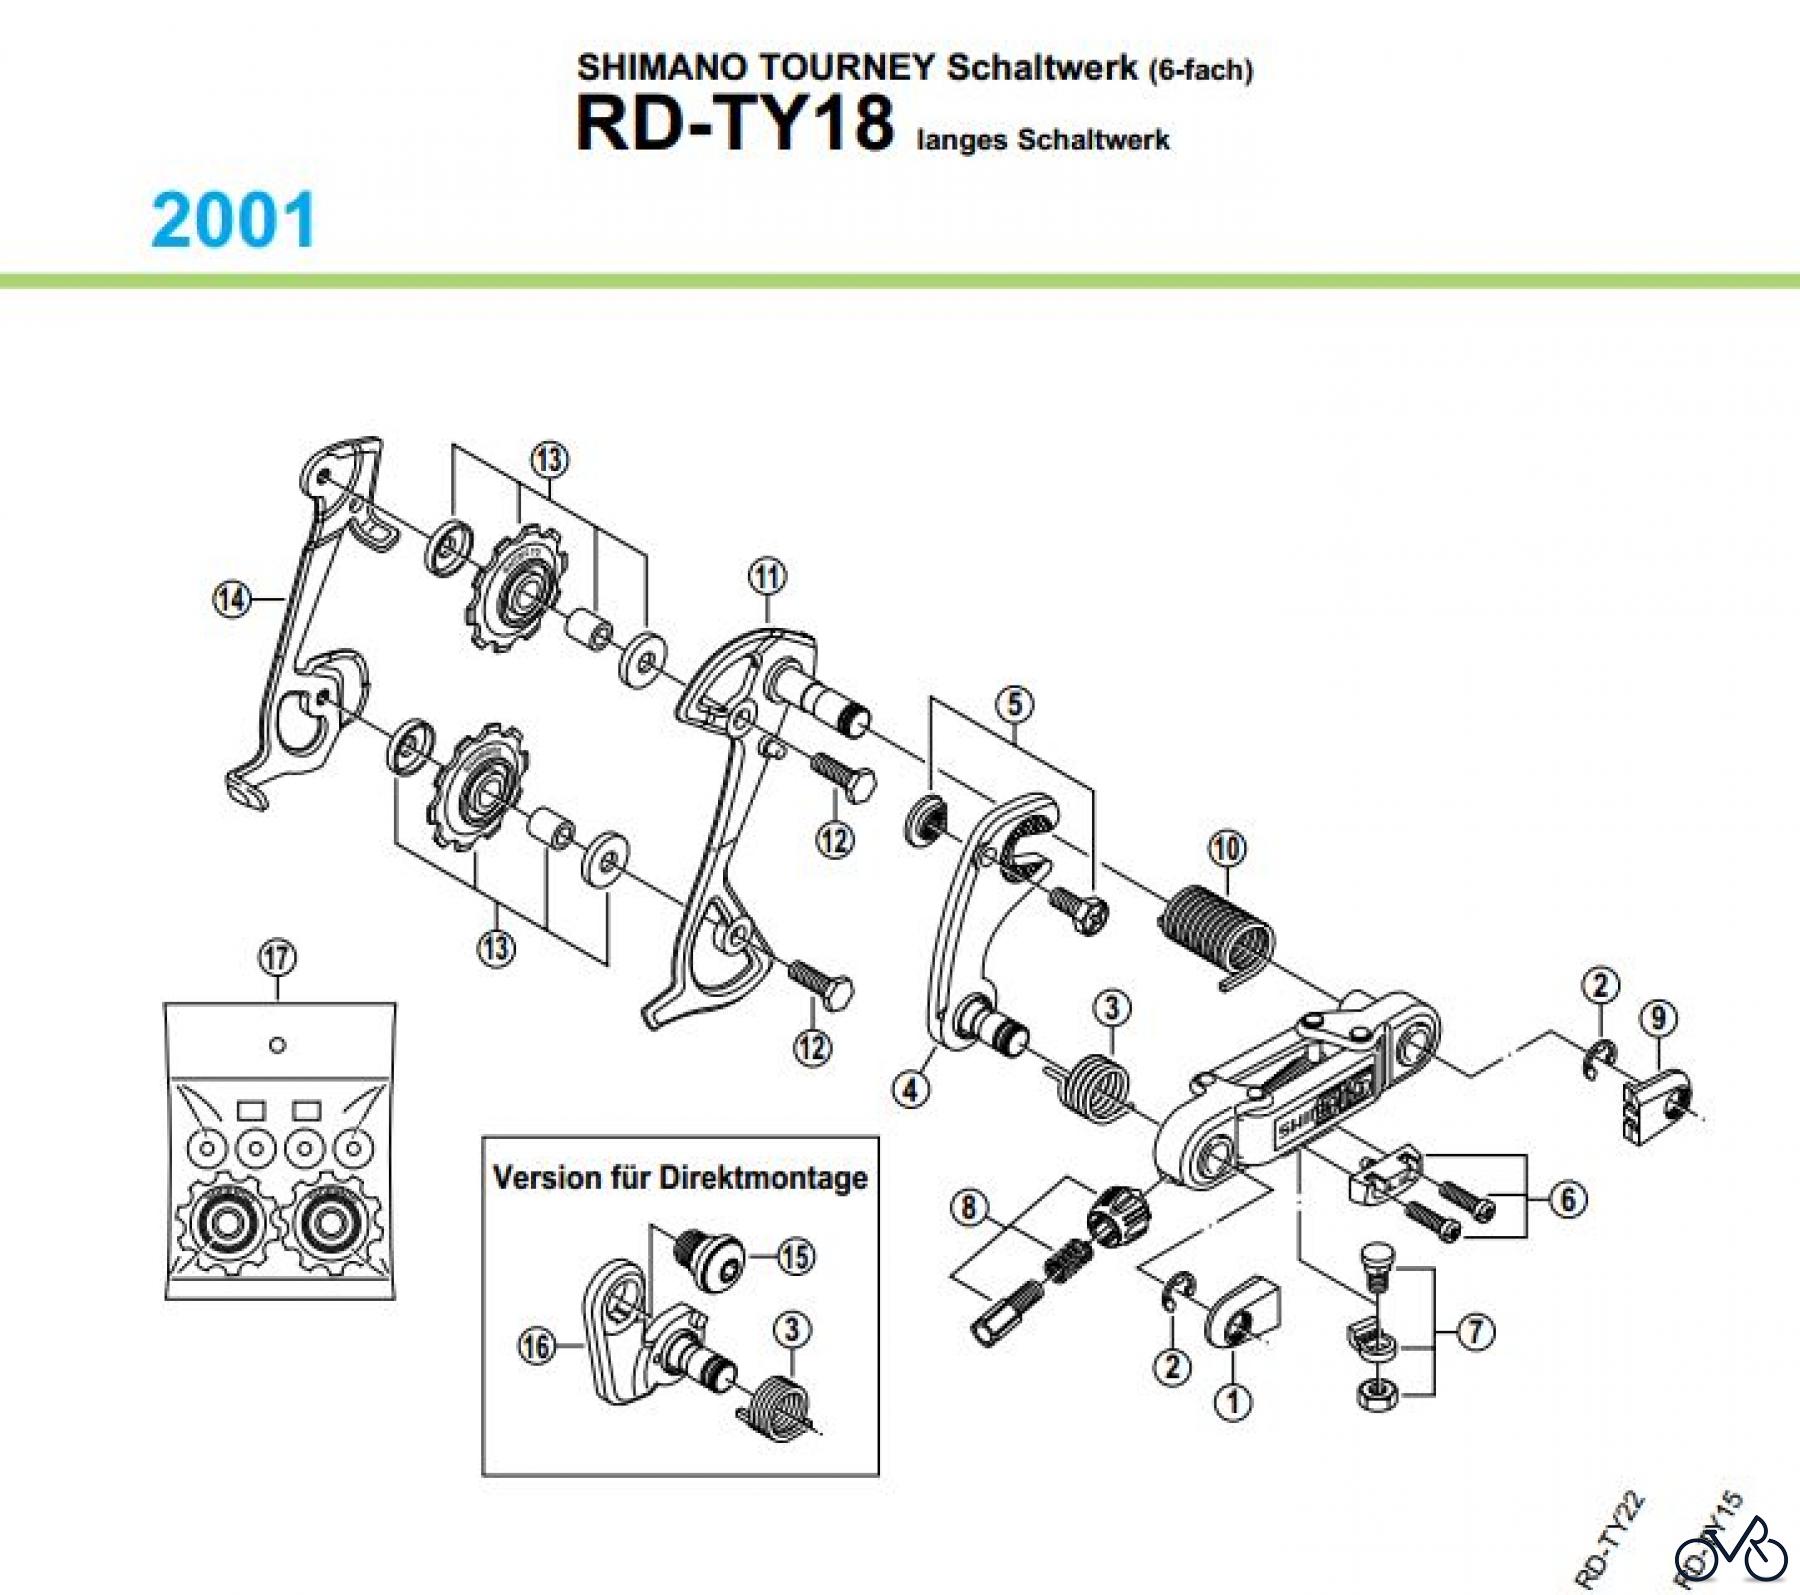  Shimano RD Rear Derailleur - Schaltwerk RD-TY18-01